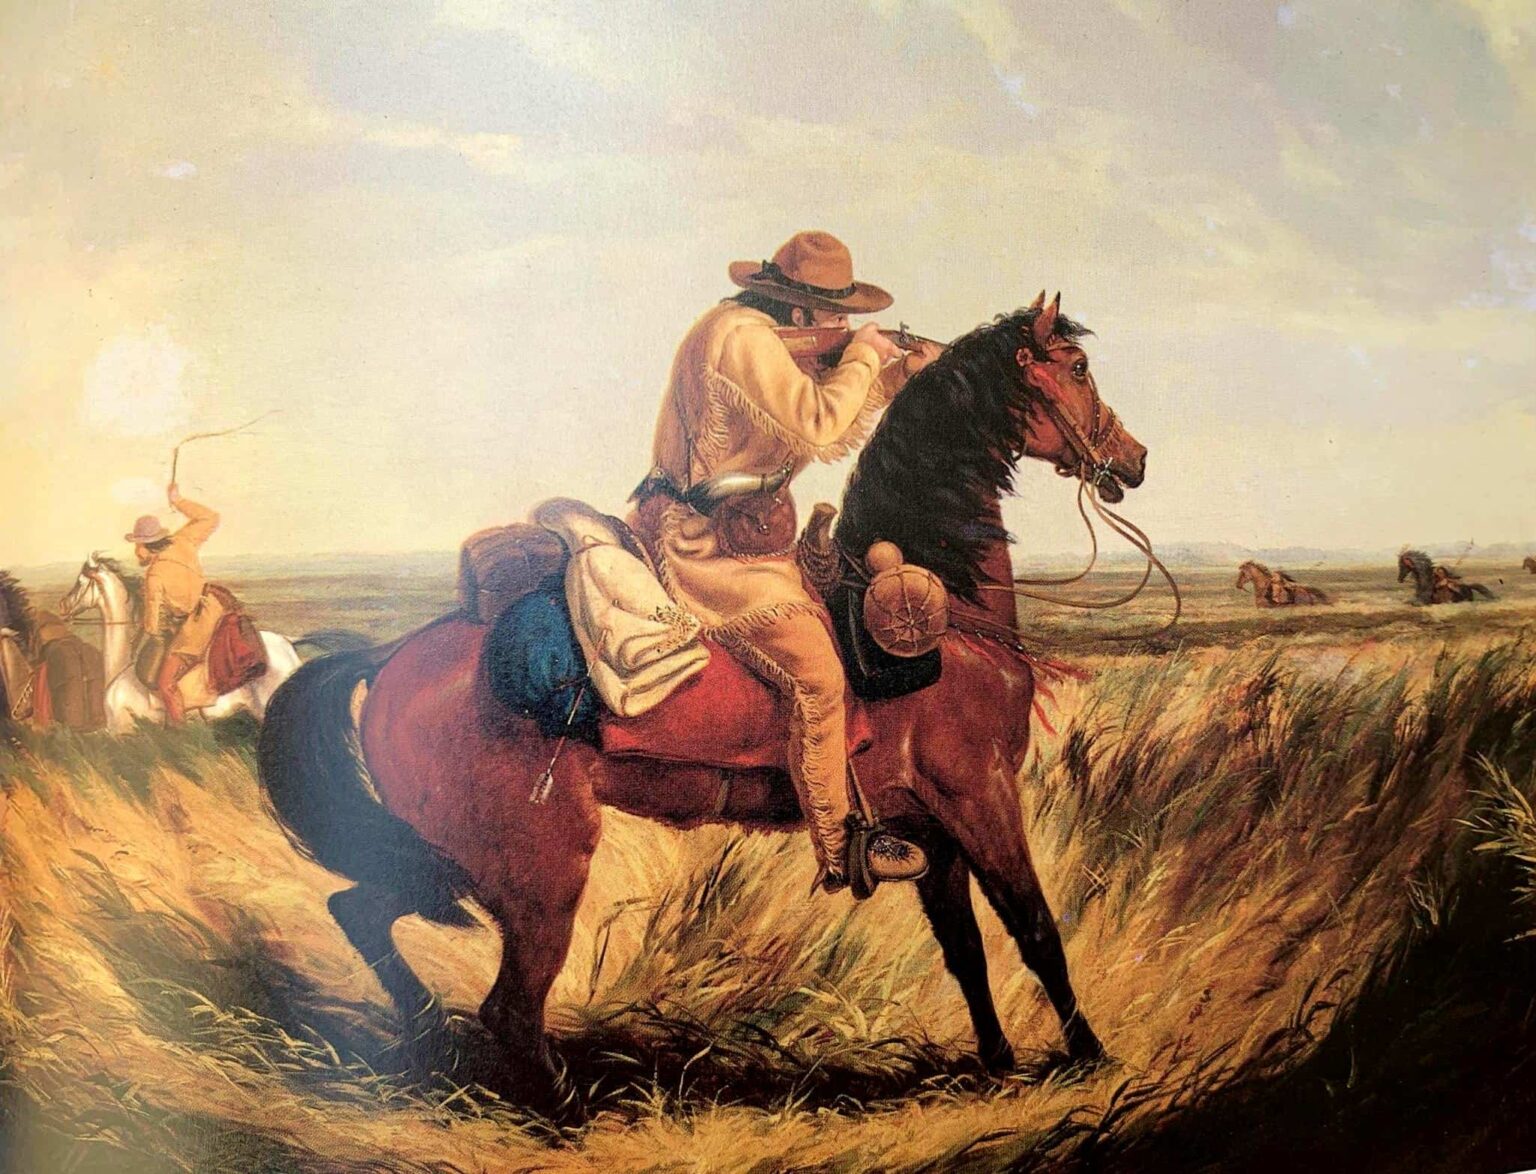 Obraz s názvem Šach od Arthura Taita zobrazuje lovce v jelenicovém oděvu z 1.poloviny 19. století. Jeho kalhoty vypadají jako kožené pantalony s třásněmi.